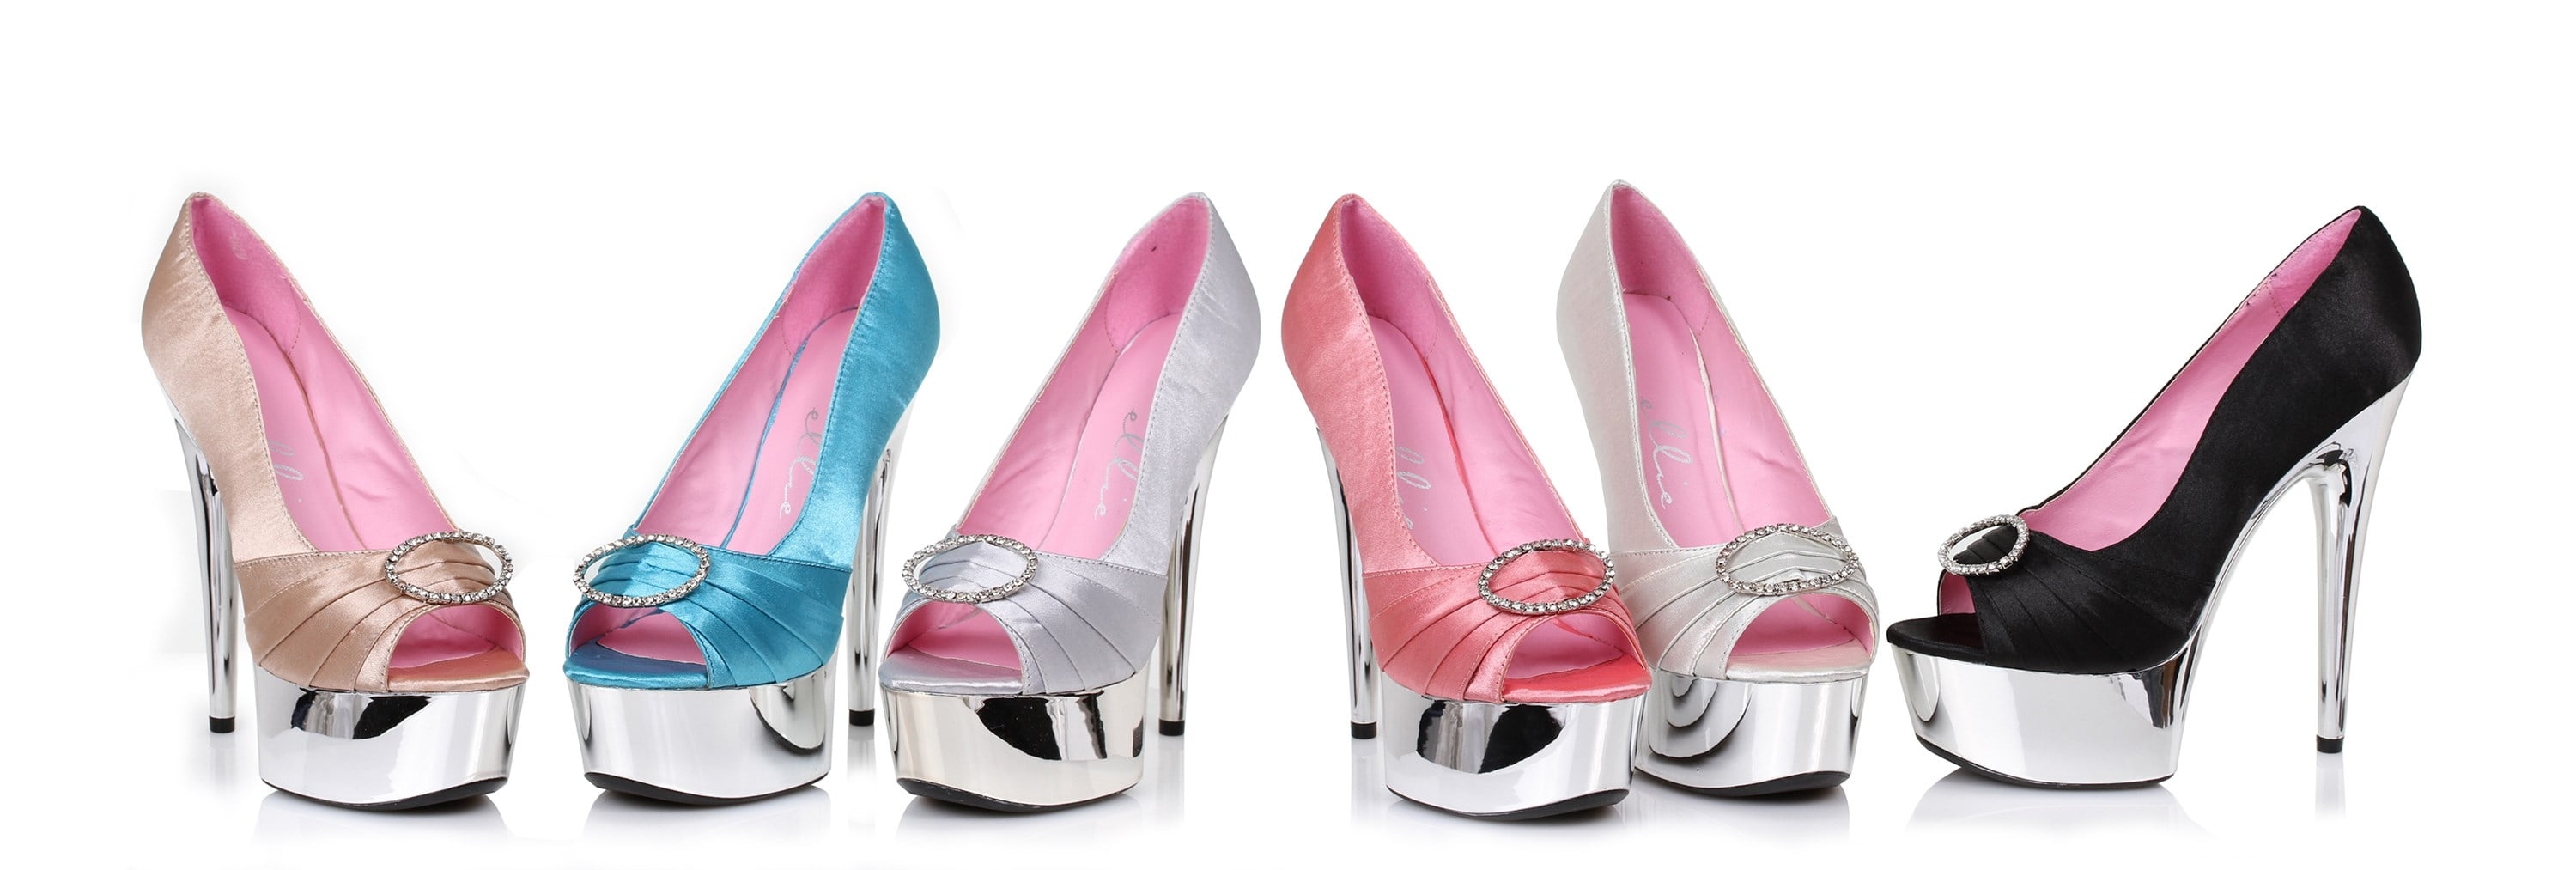 ELLIE Shoes Strappy Sandal Open Toe Platform Ankle Heels Buckles 609-UNA Pink-9 